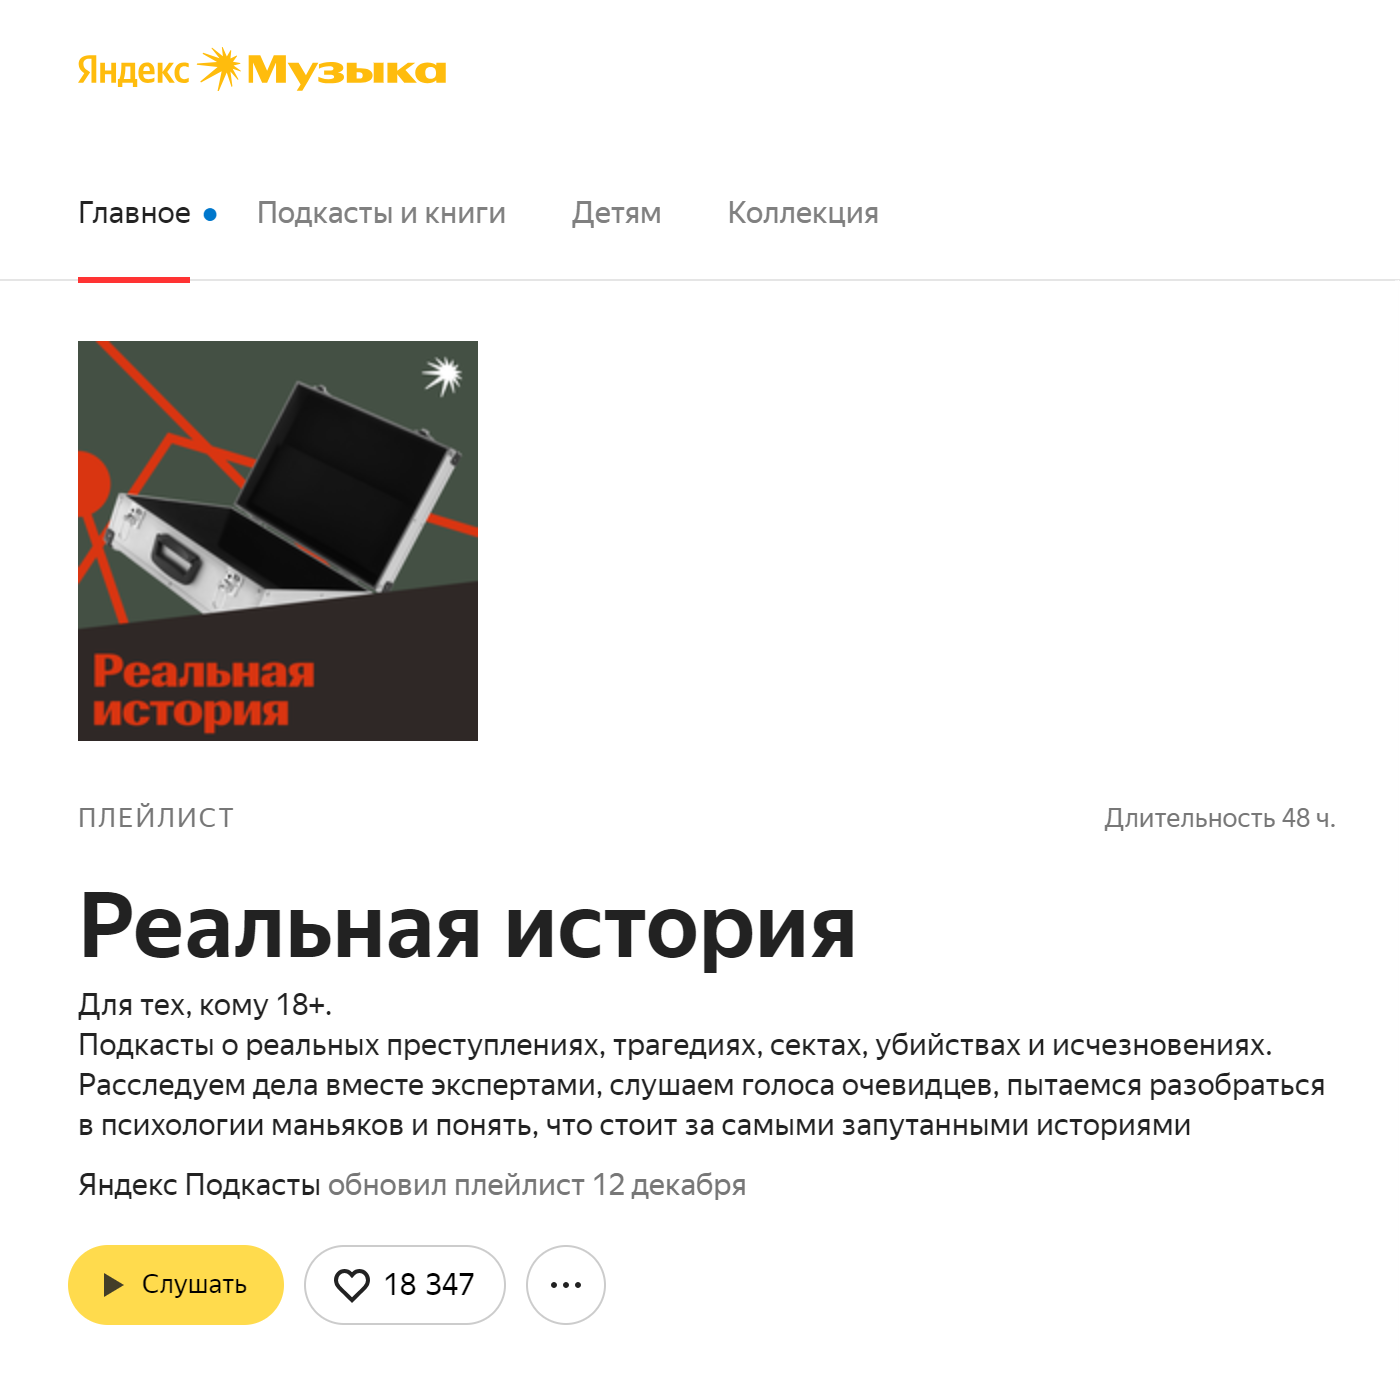 У «Яндекс-музыки» есть специальный плейлист — 48 часов тру-крайм-историй. Источник music.yandex.ru